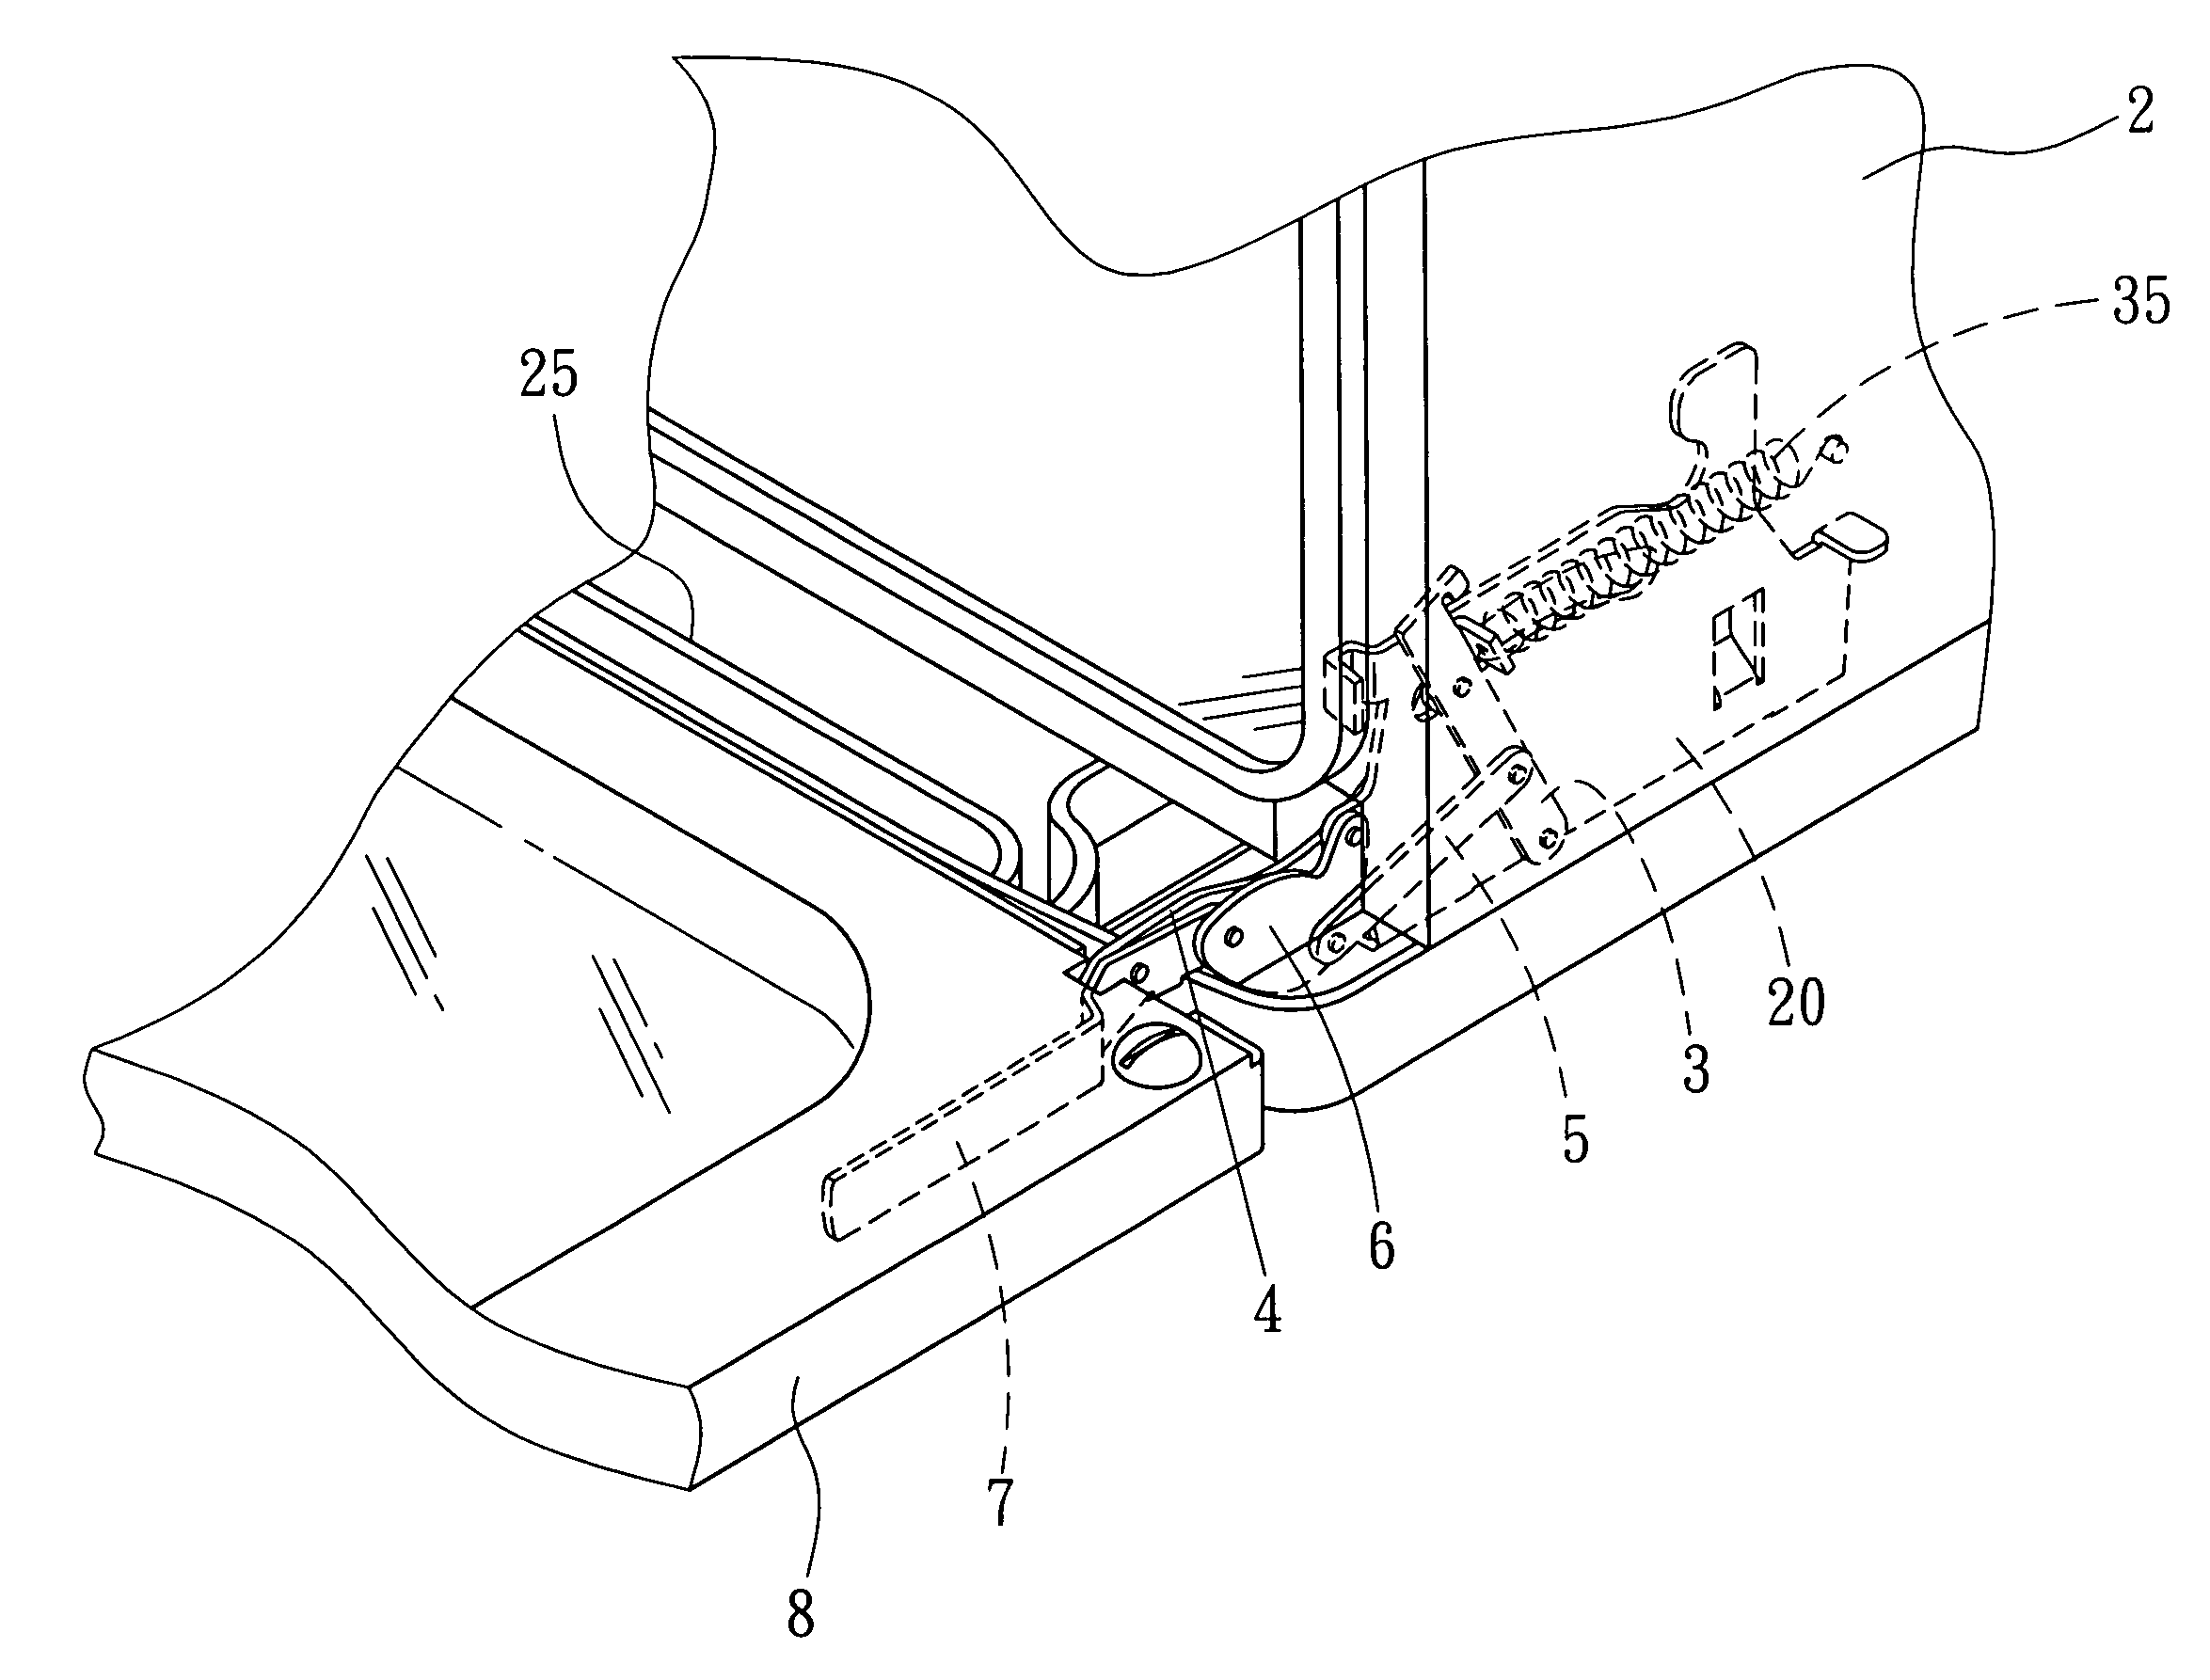 Hinge device of a steam oven door